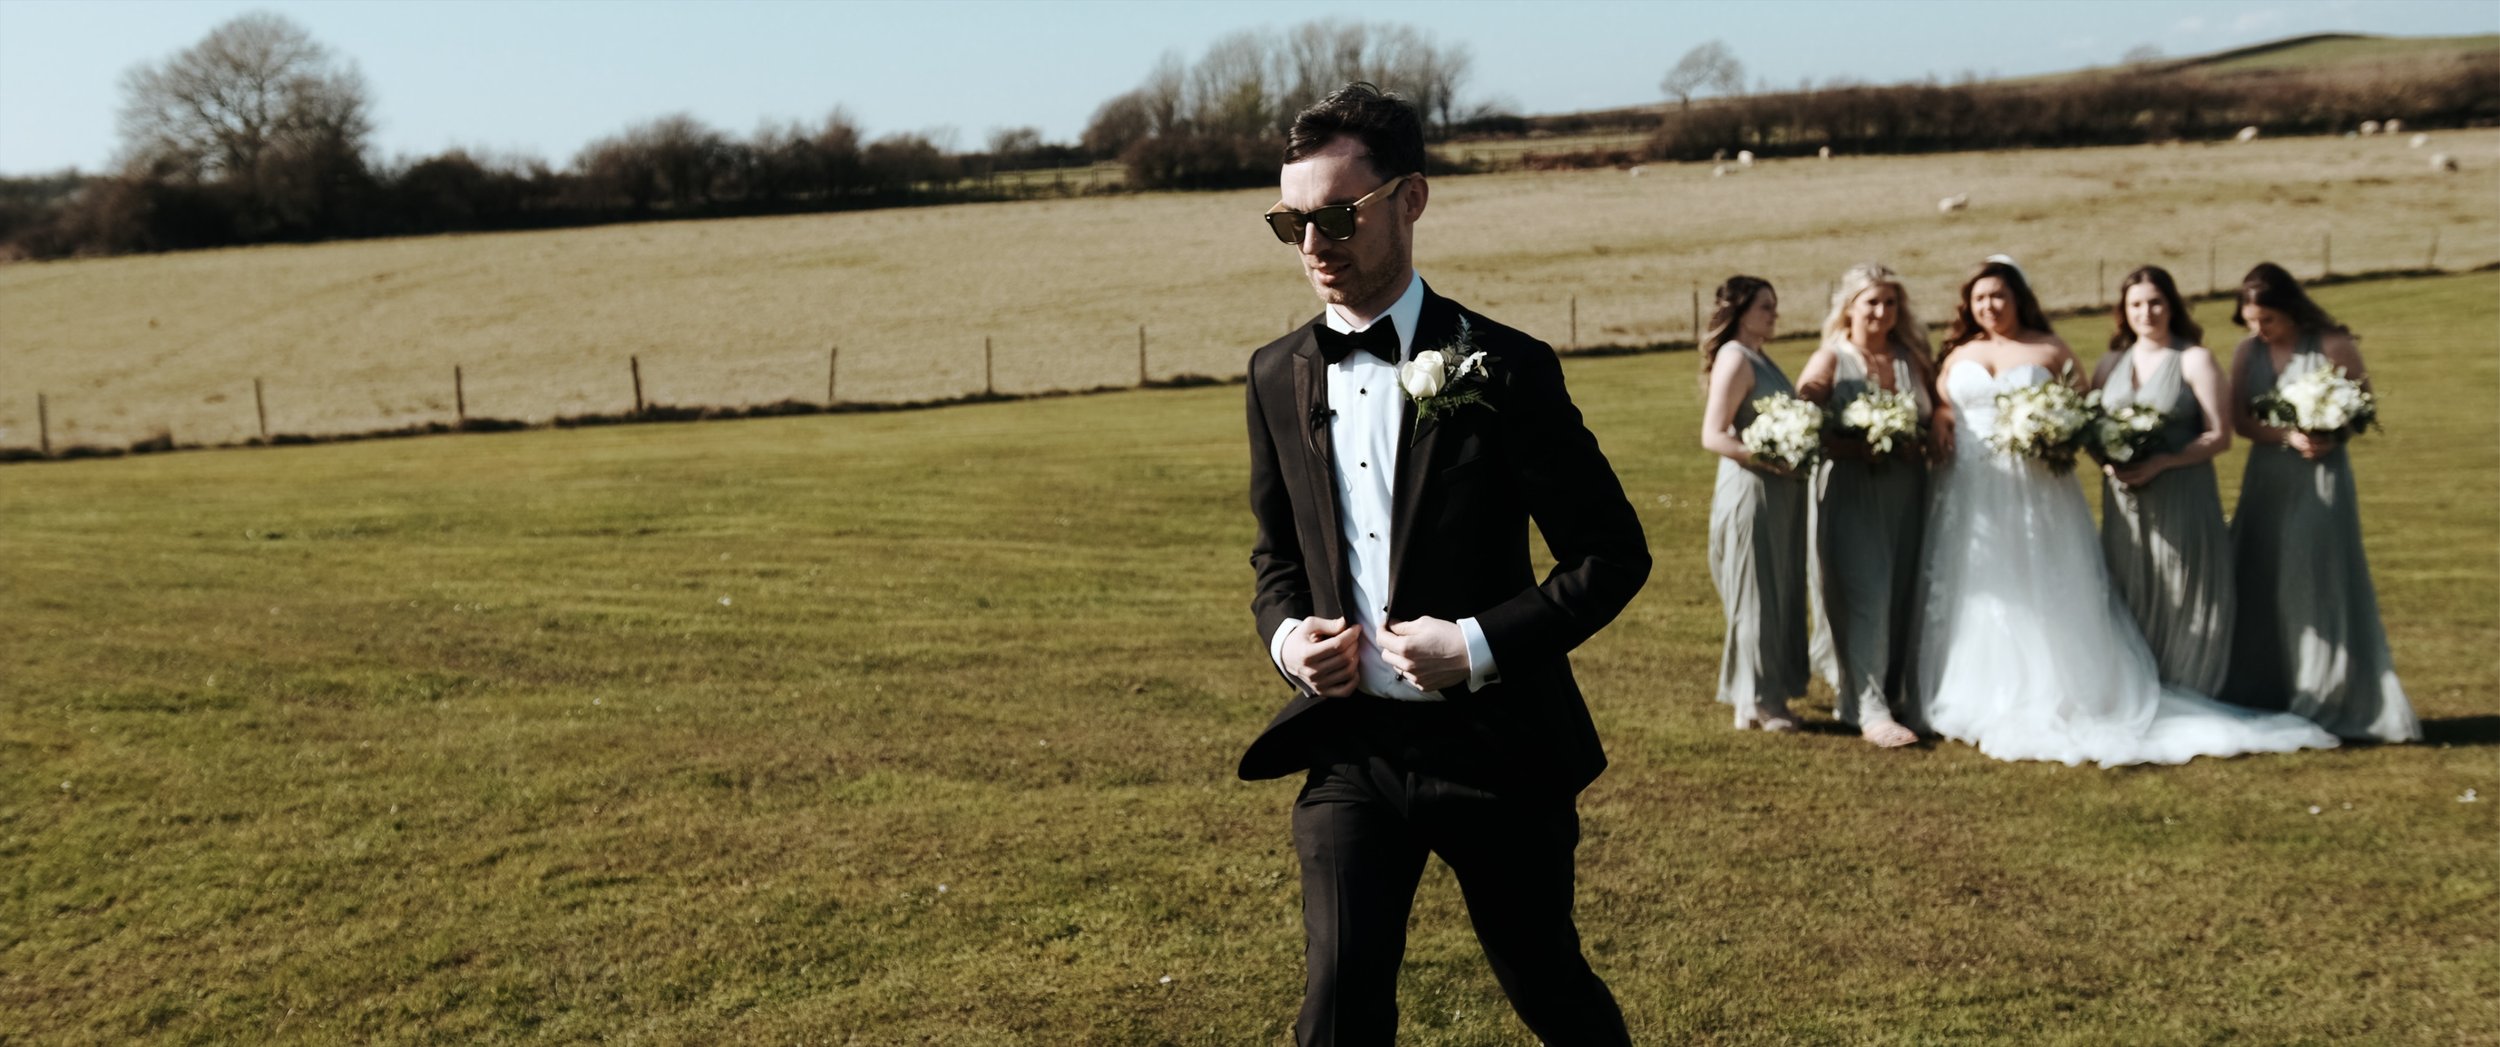 Oldwalls Gower Wedding Videography by Ben Holbrook Films9.jpg